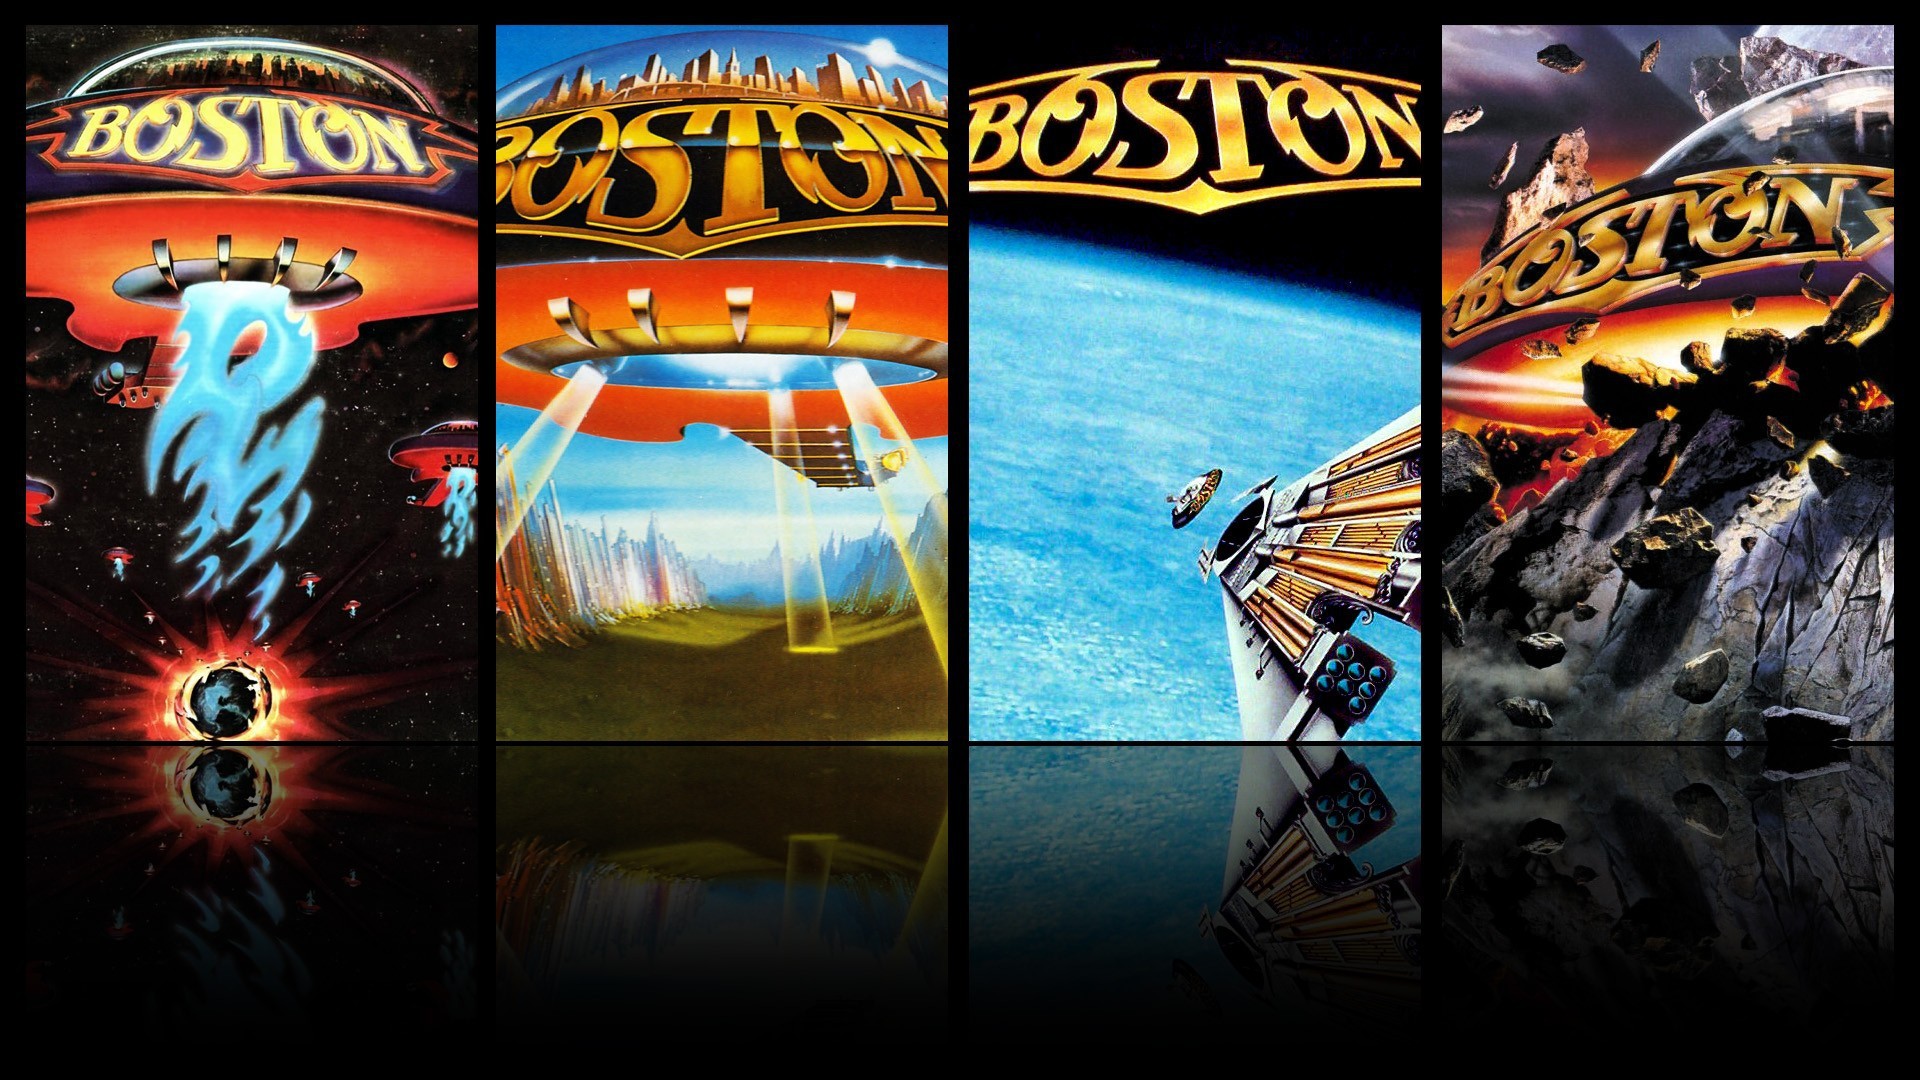 Descarga gratuita de fondo de pantalla para móvil de Música, Bostón.